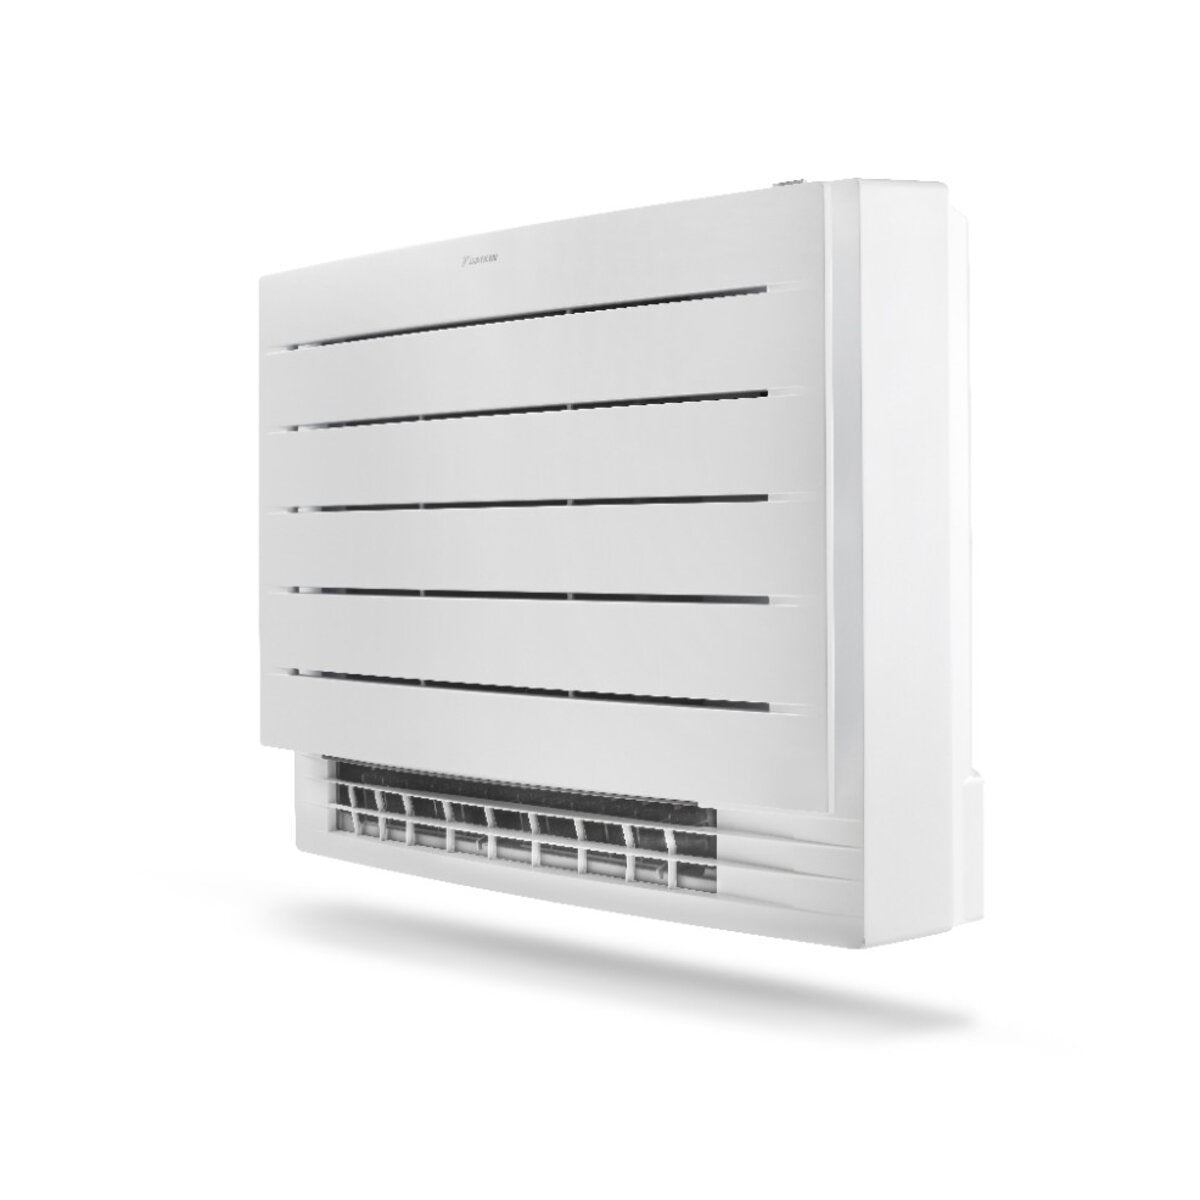 Daikin floor air conditioner Perfera Floor 9000 BTU inverter A +++ with wifi